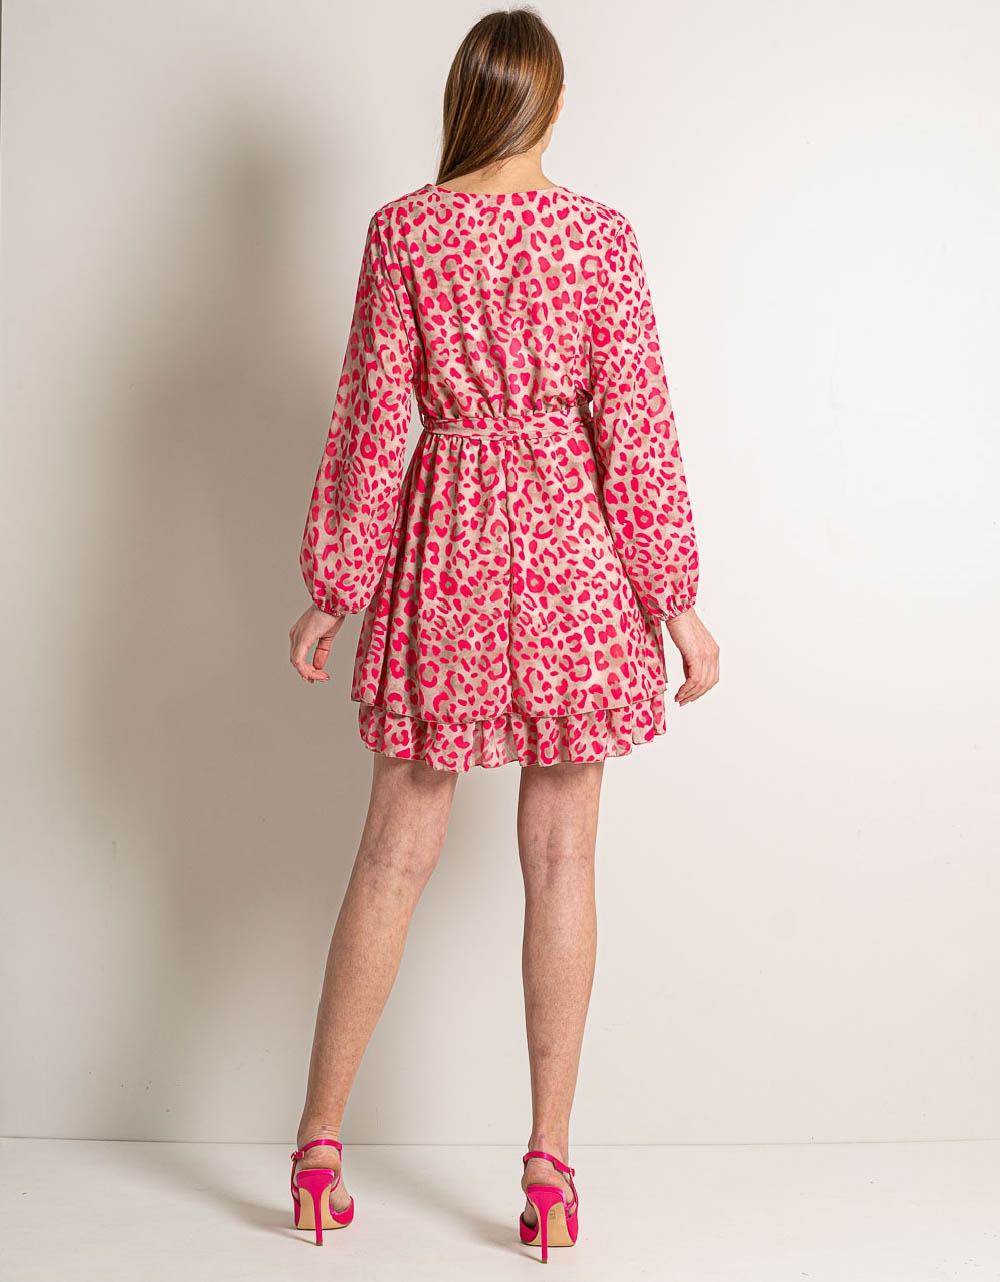 Εικόνα από Κρουαζέ μίνι φόρεμα με print και ζωνάκι Μπεζ